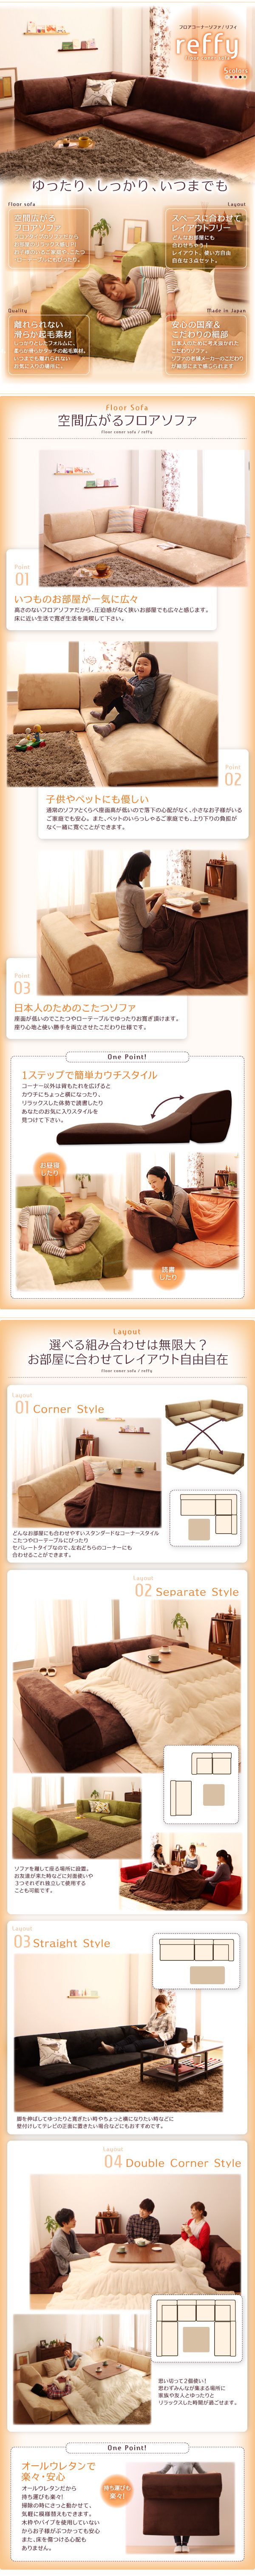 【値引販売】■reffy/ベージュ フロアコーナーソファ [リフィ] いつものお部屋が一気に広々 子供やペットにも優しい 日本人のためのこたつソファ 布製